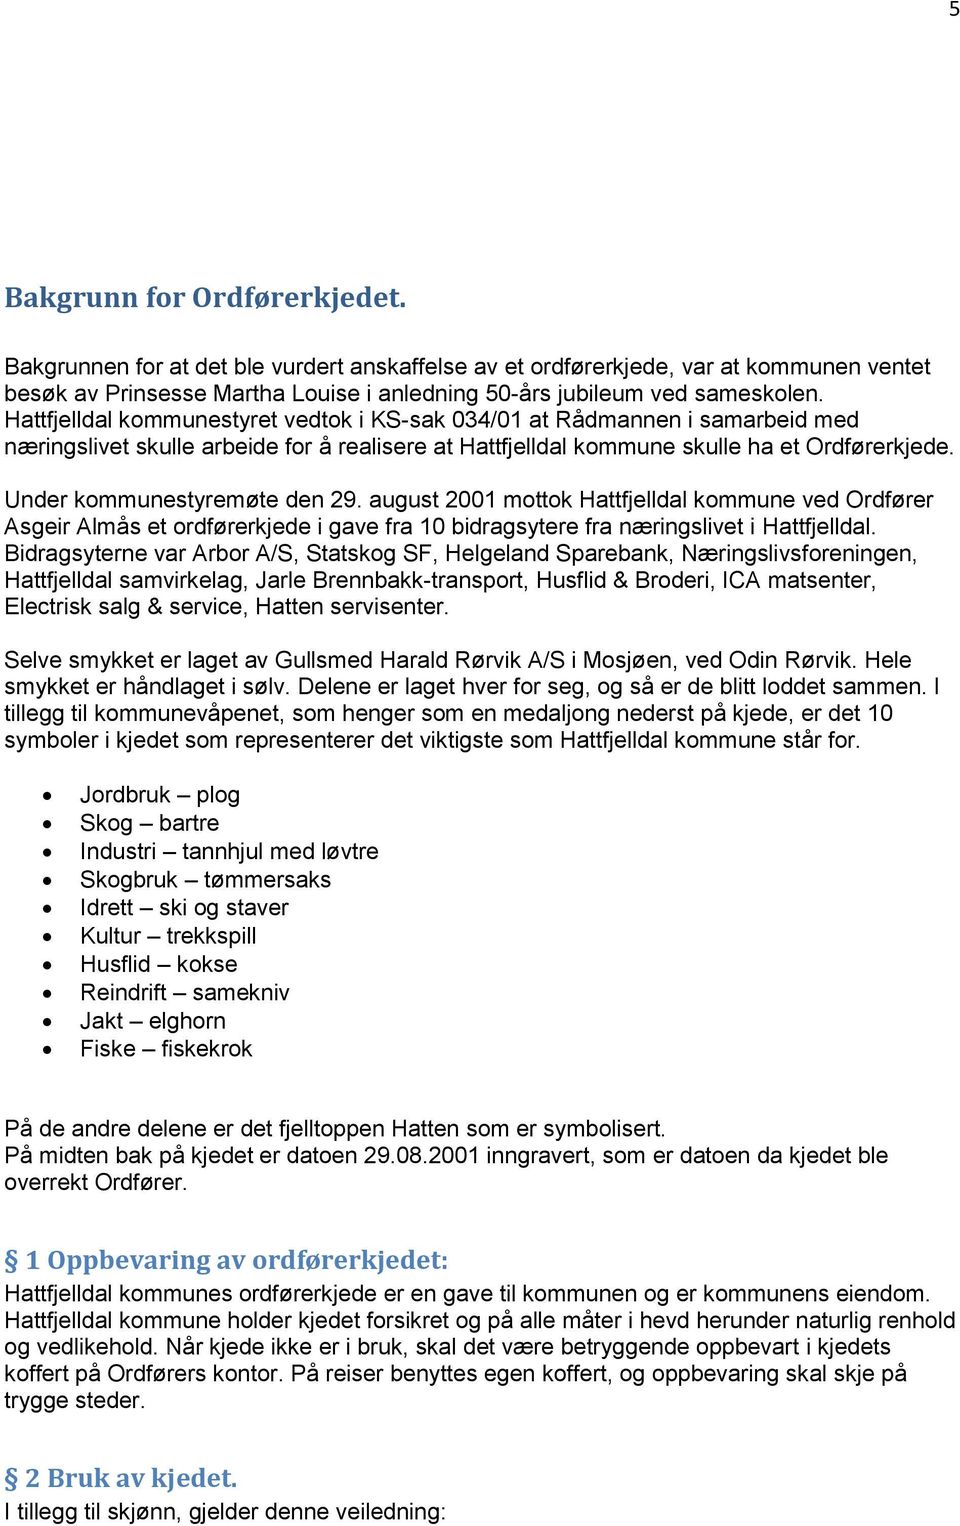 Under kommunestyremøte den 29. august 2001 mottok Hattfjelldal kommune ved Ordfører Asgeir Almås et ordførerkjede i gave fra 10 bidragsytere fra næringslivet i Hattfjelldal.